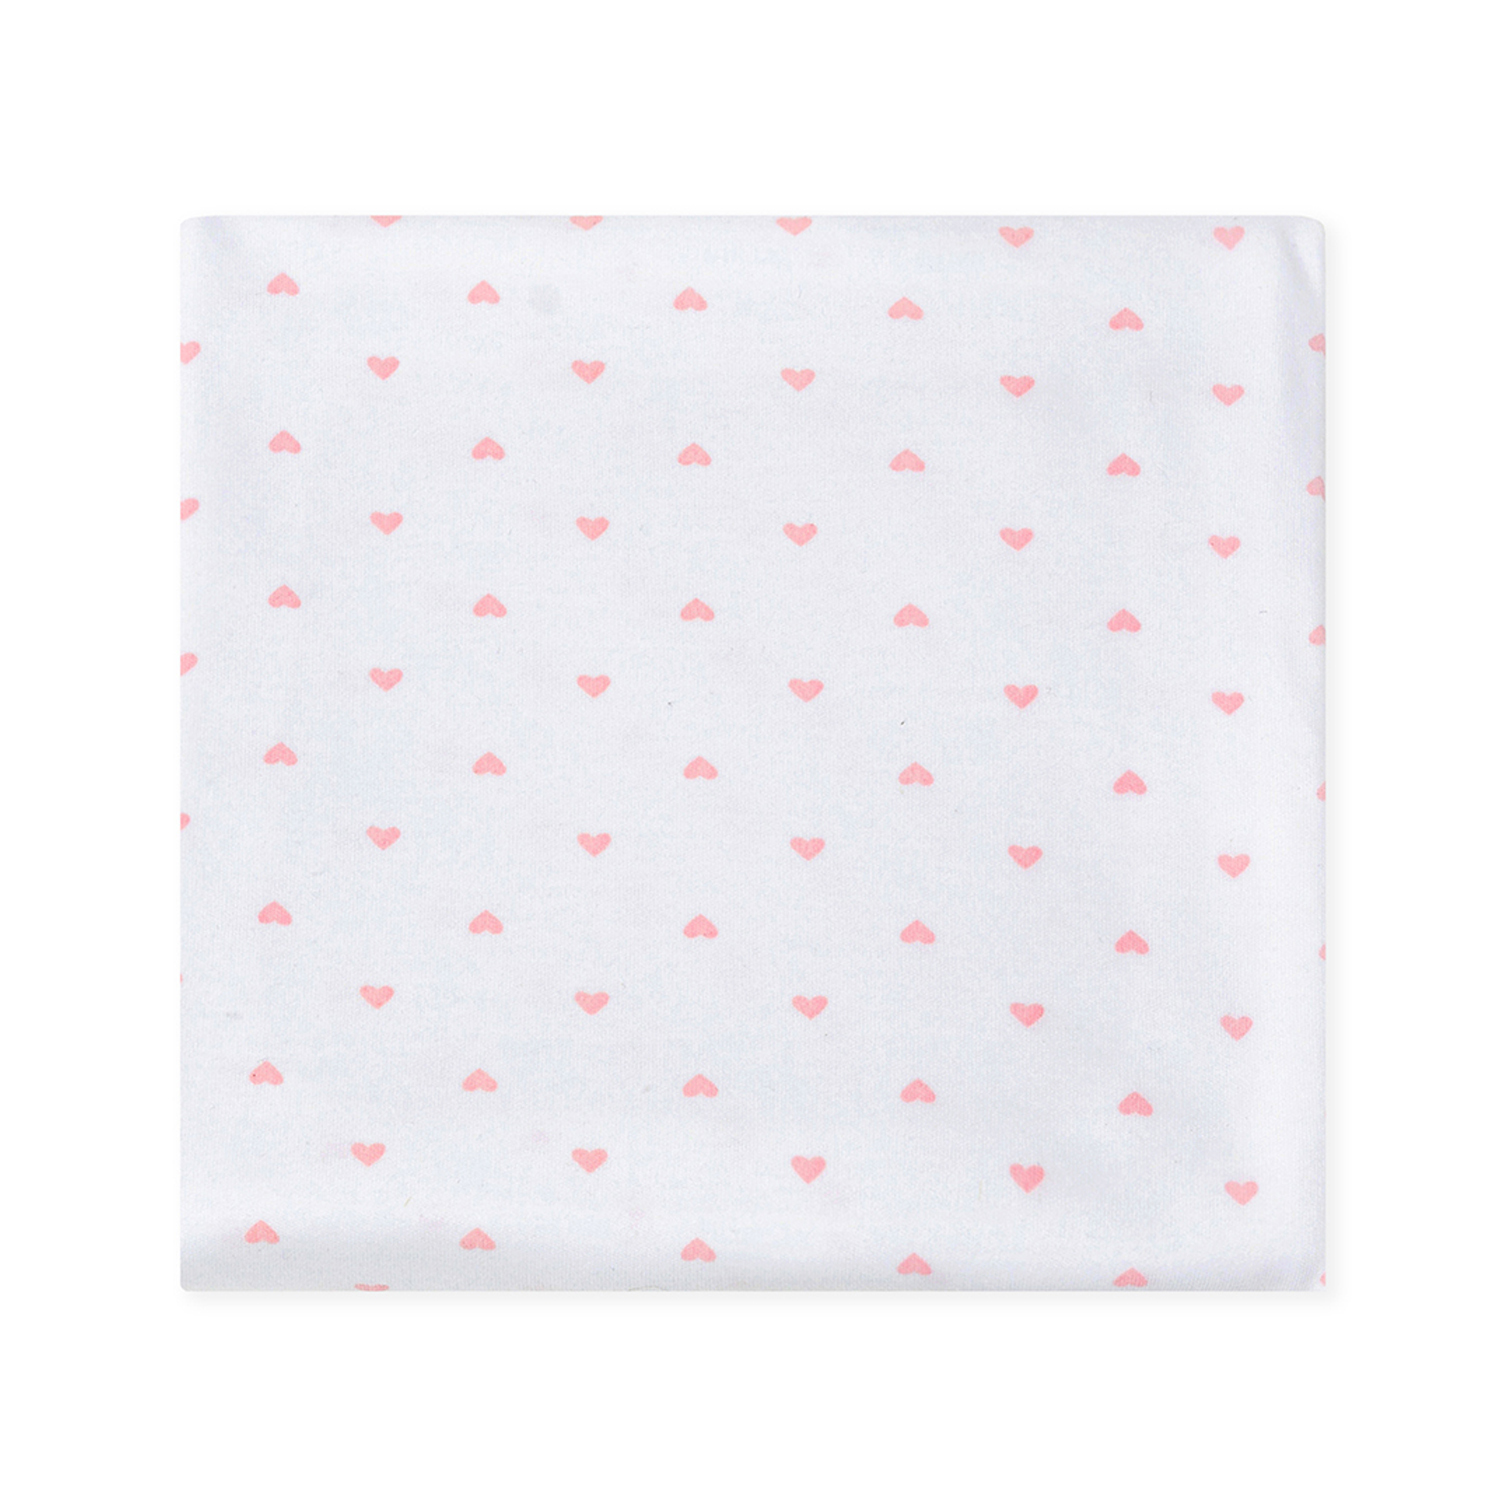 Пеленка трикотажная inlovery для новорожденных Восторг сердечки розовые 85х120 см - фото 6